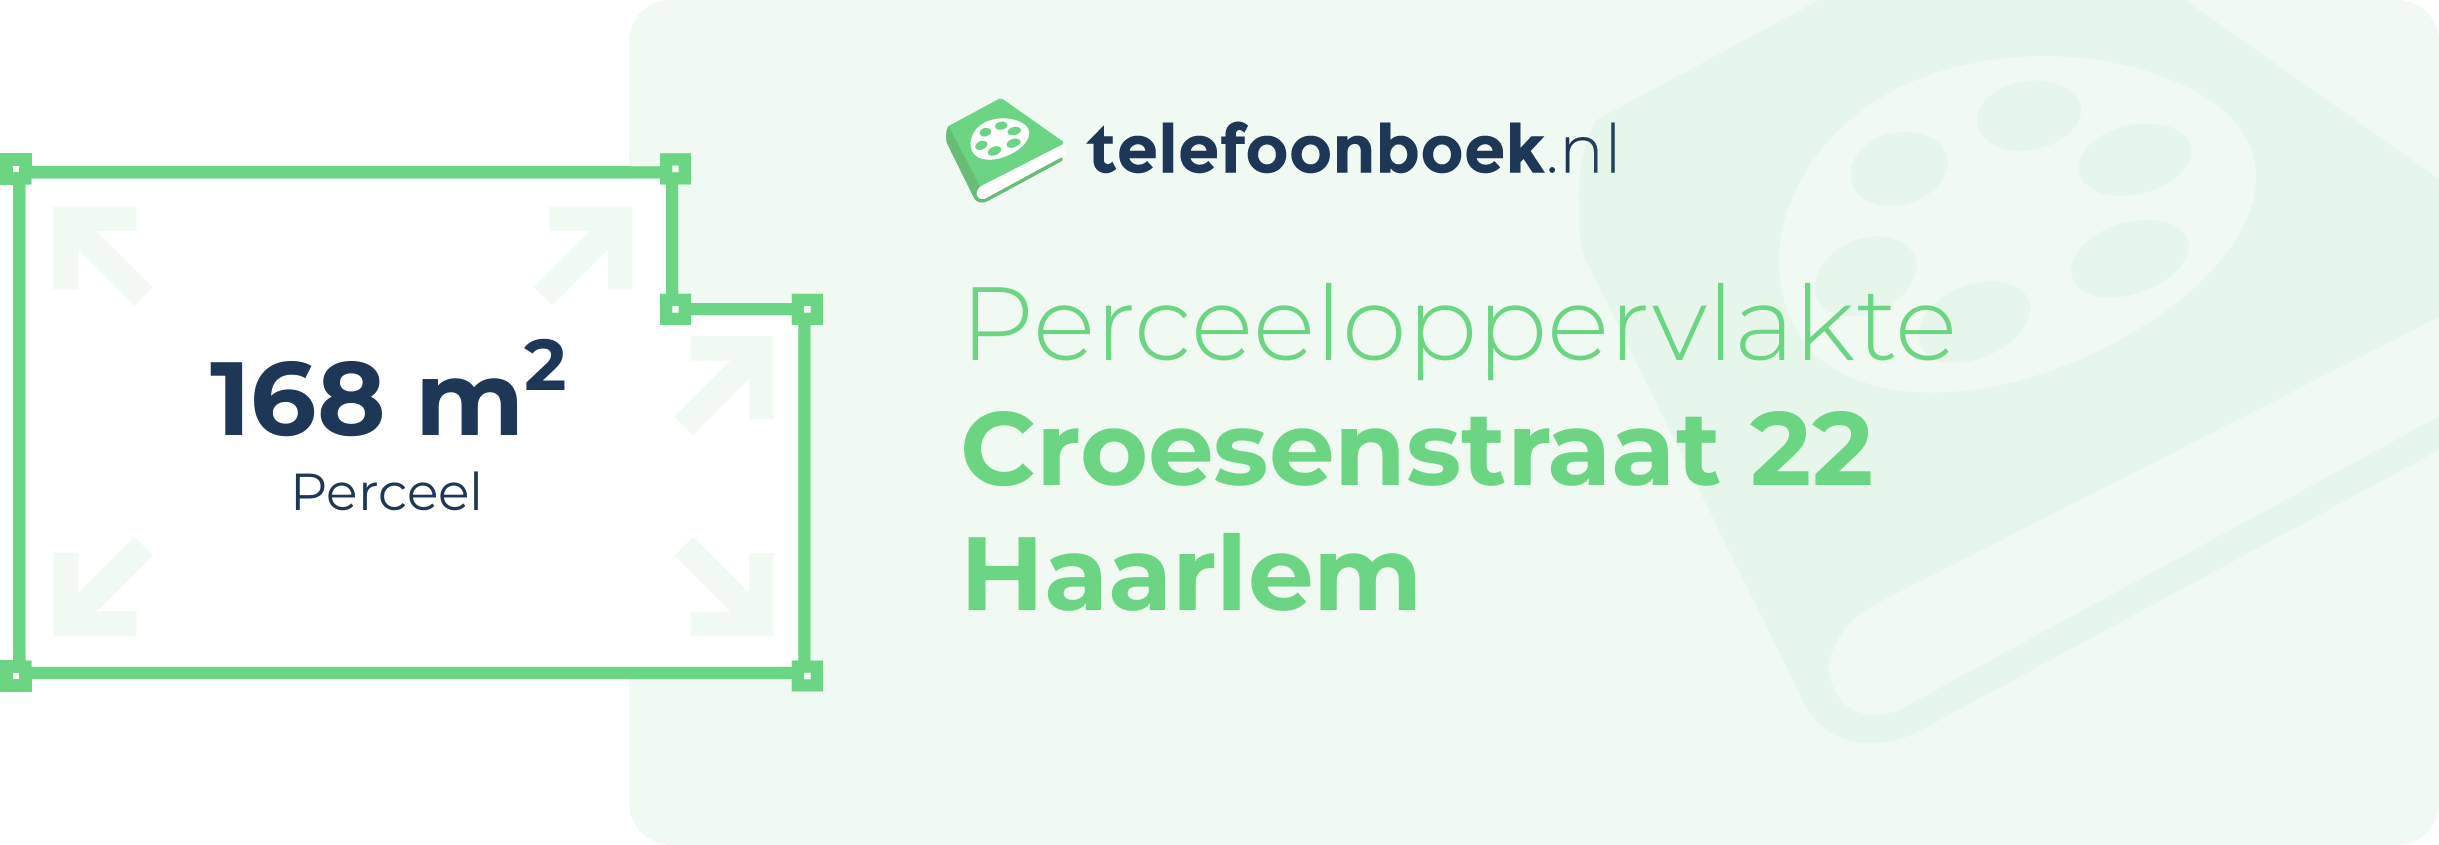 Perceeloppervlakte Croesenstraat 22 Haarlem